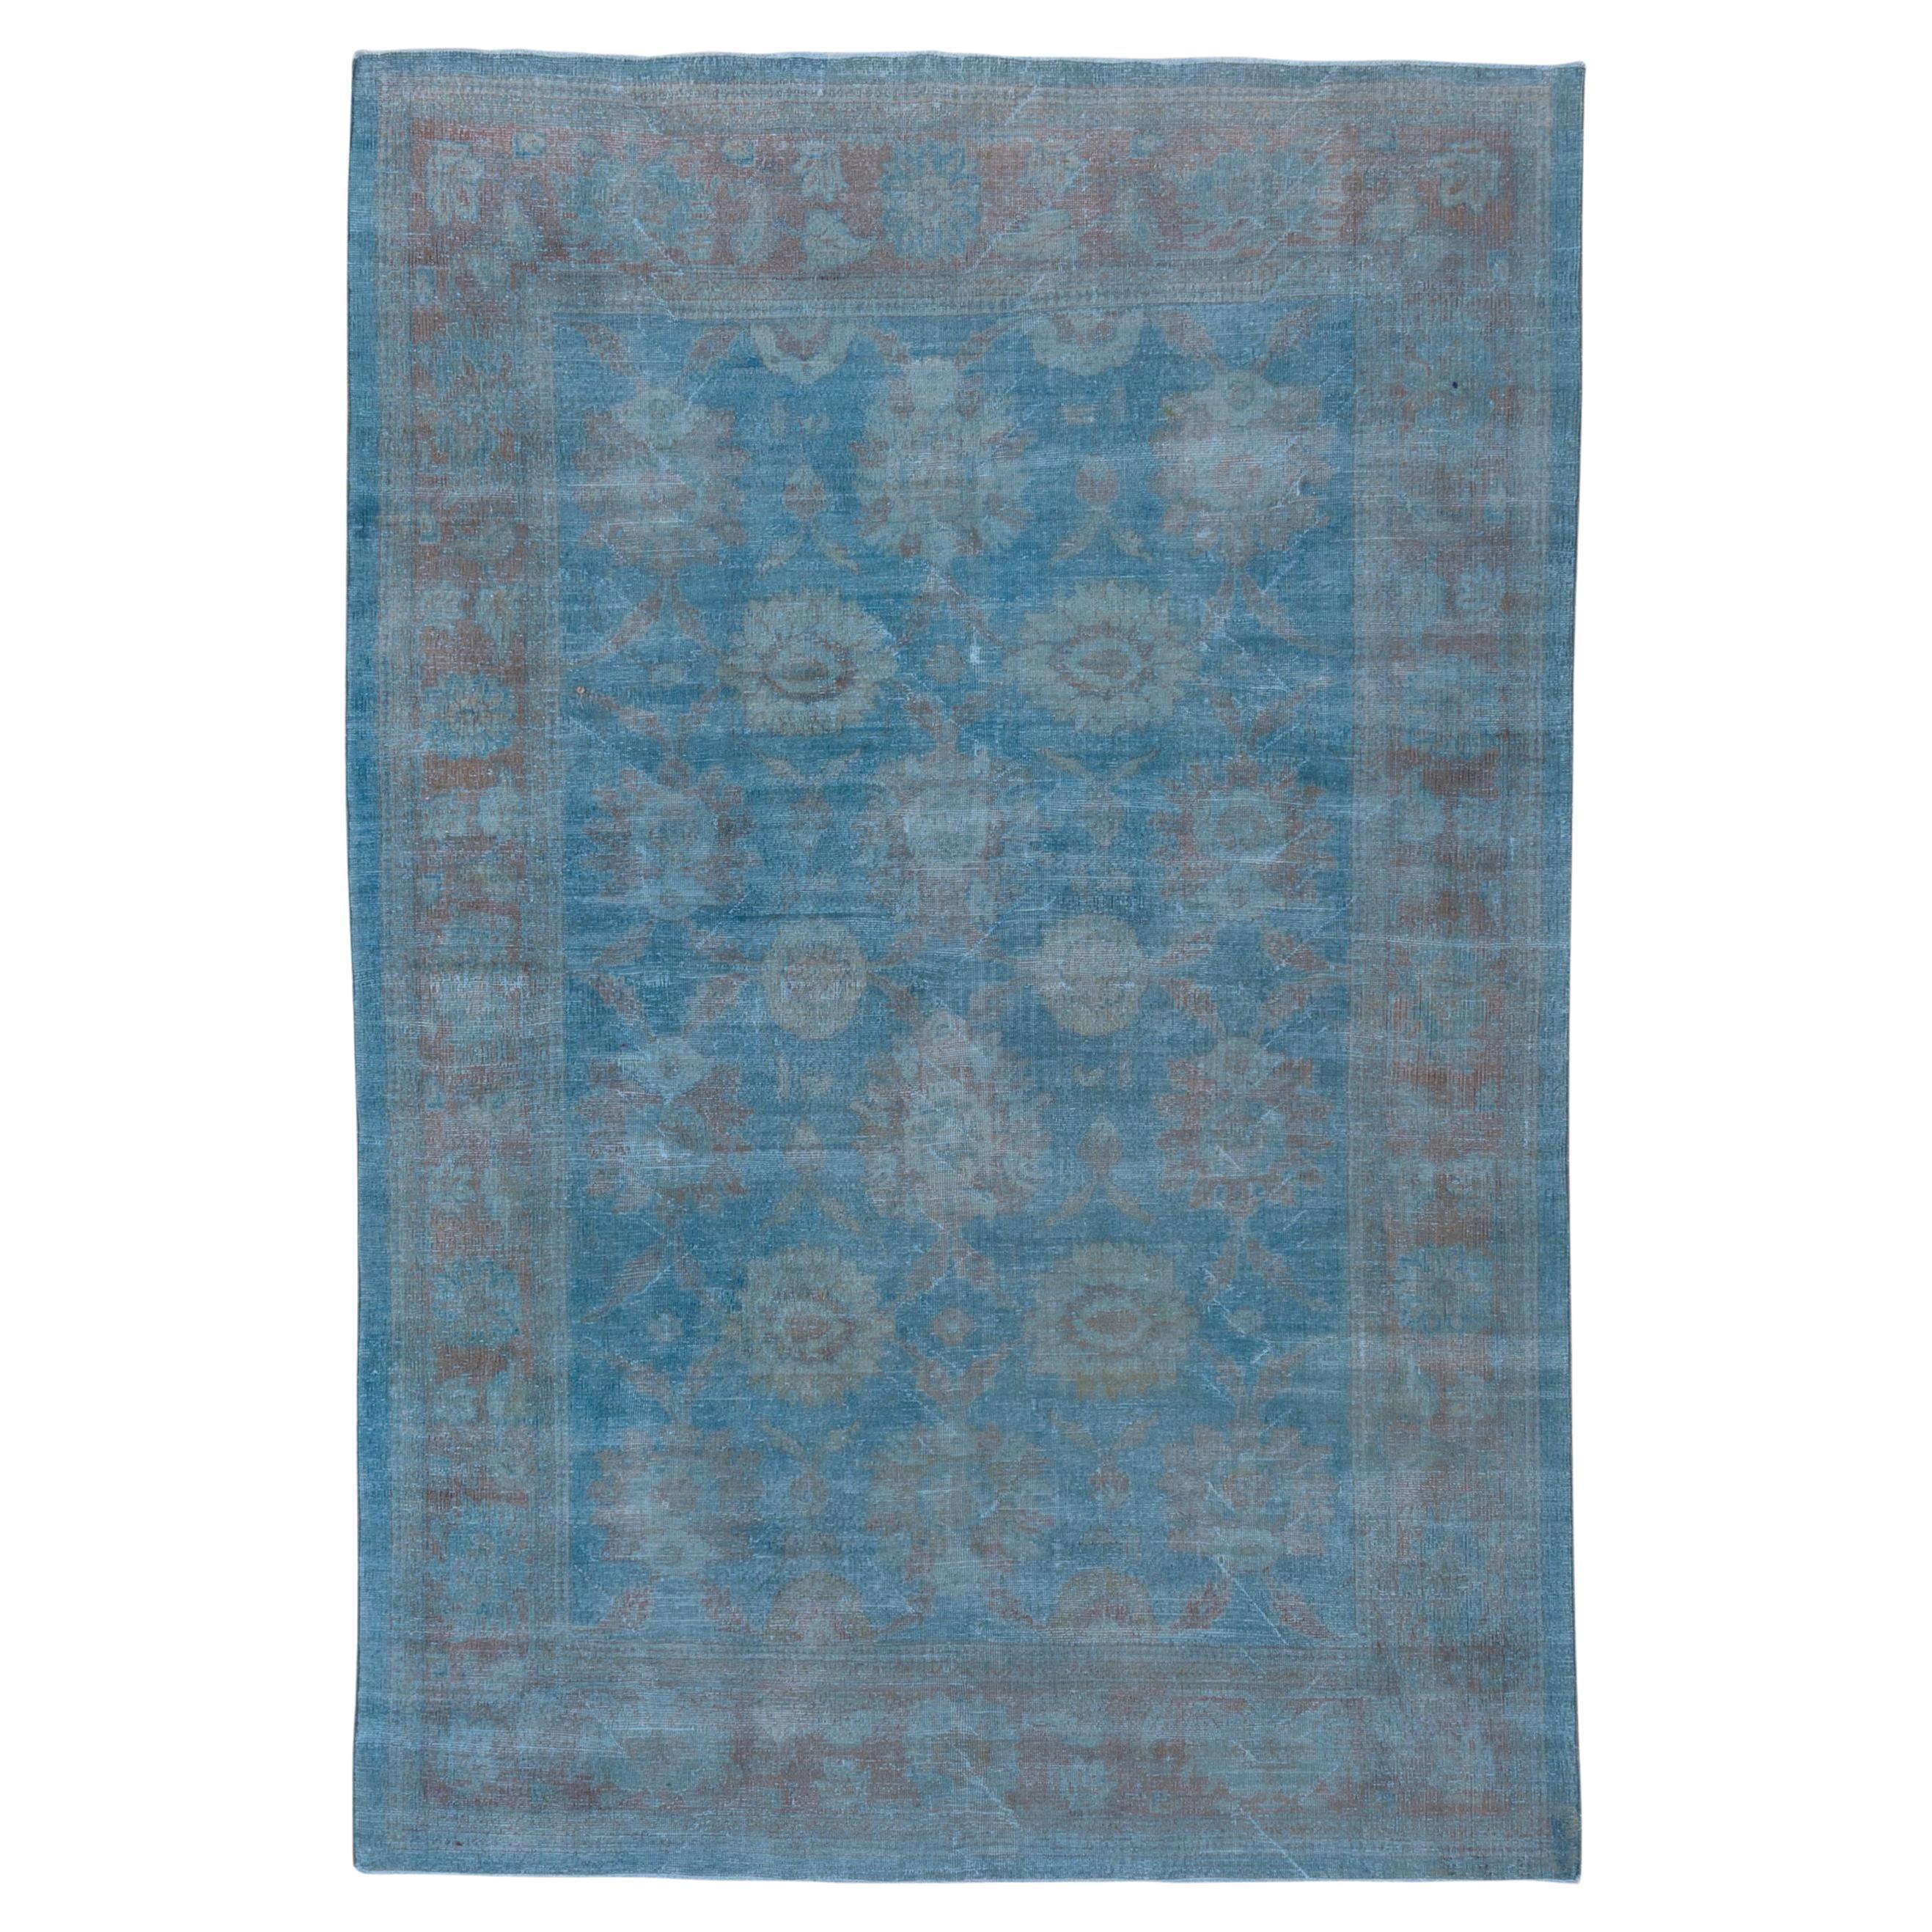 Antique Blue Persian Mahal Carpet